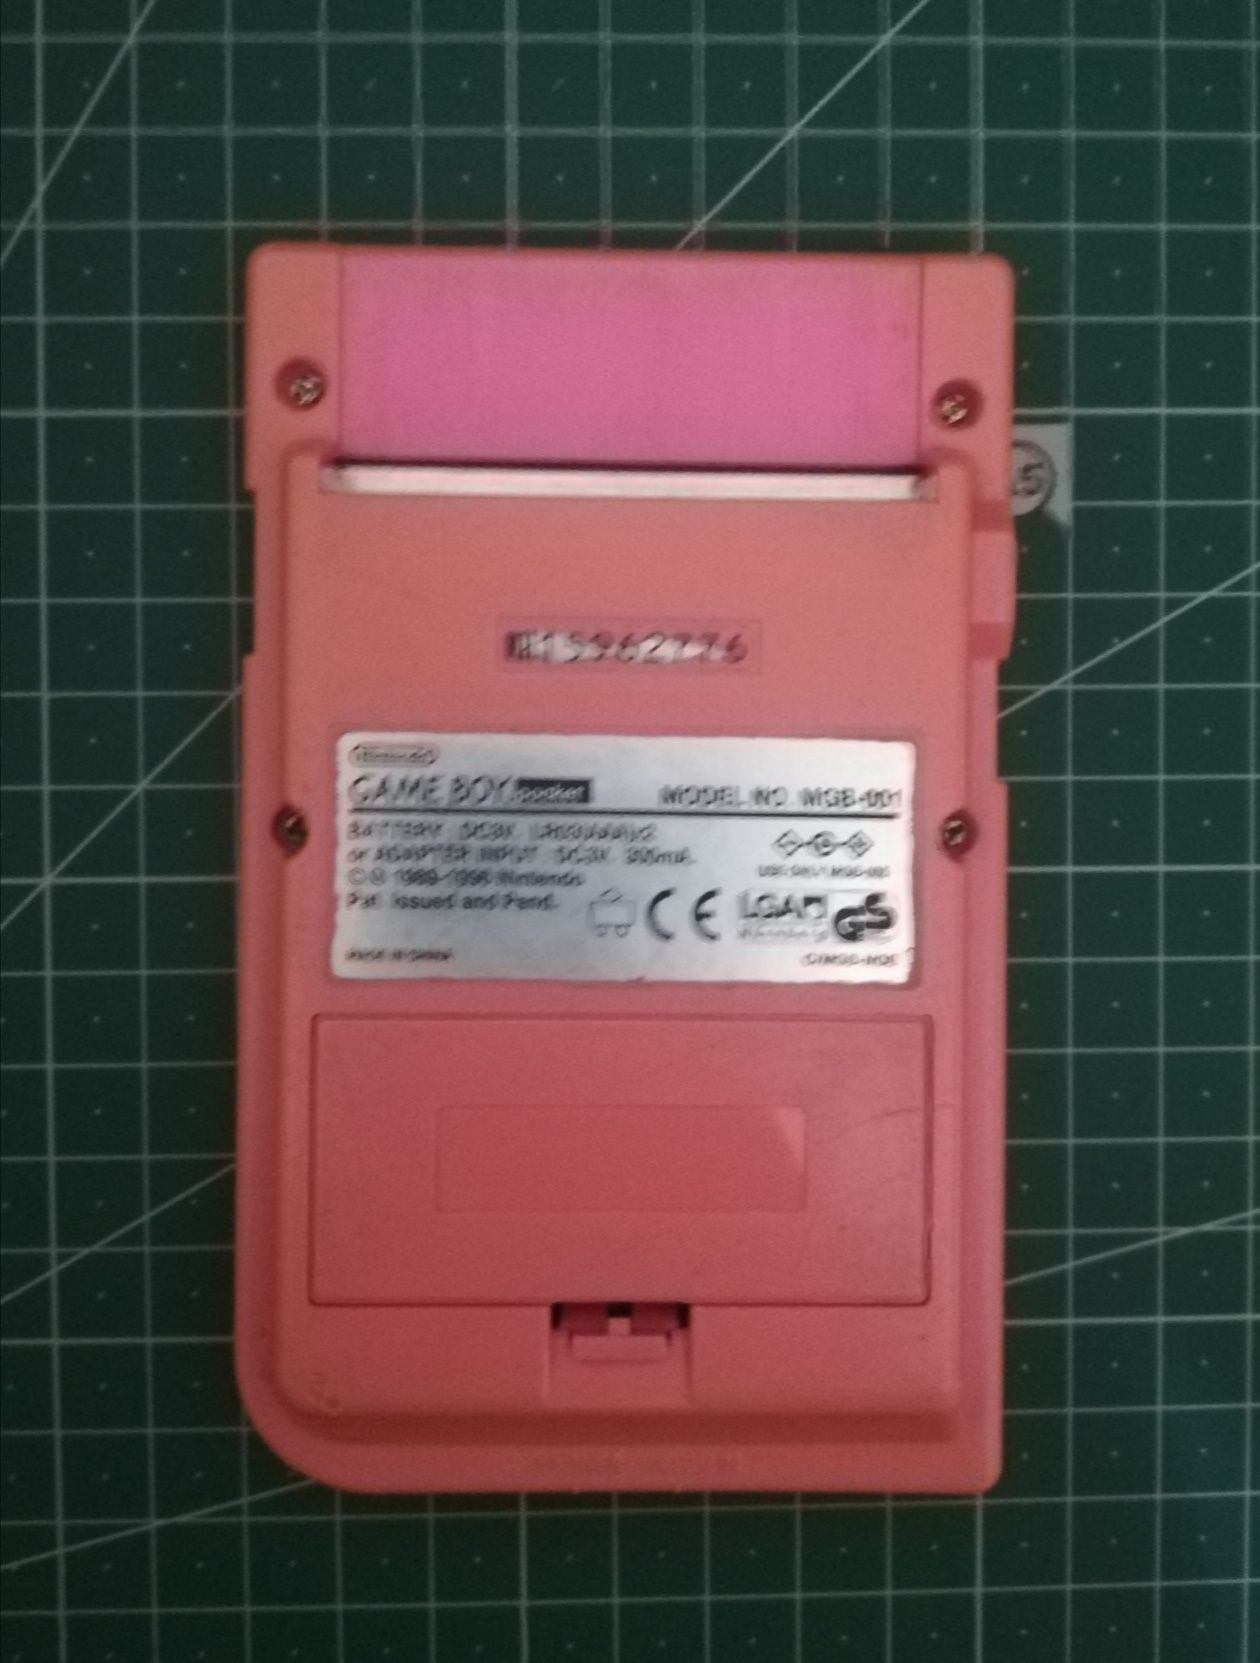 Game boy pocket rosa ecrã ips